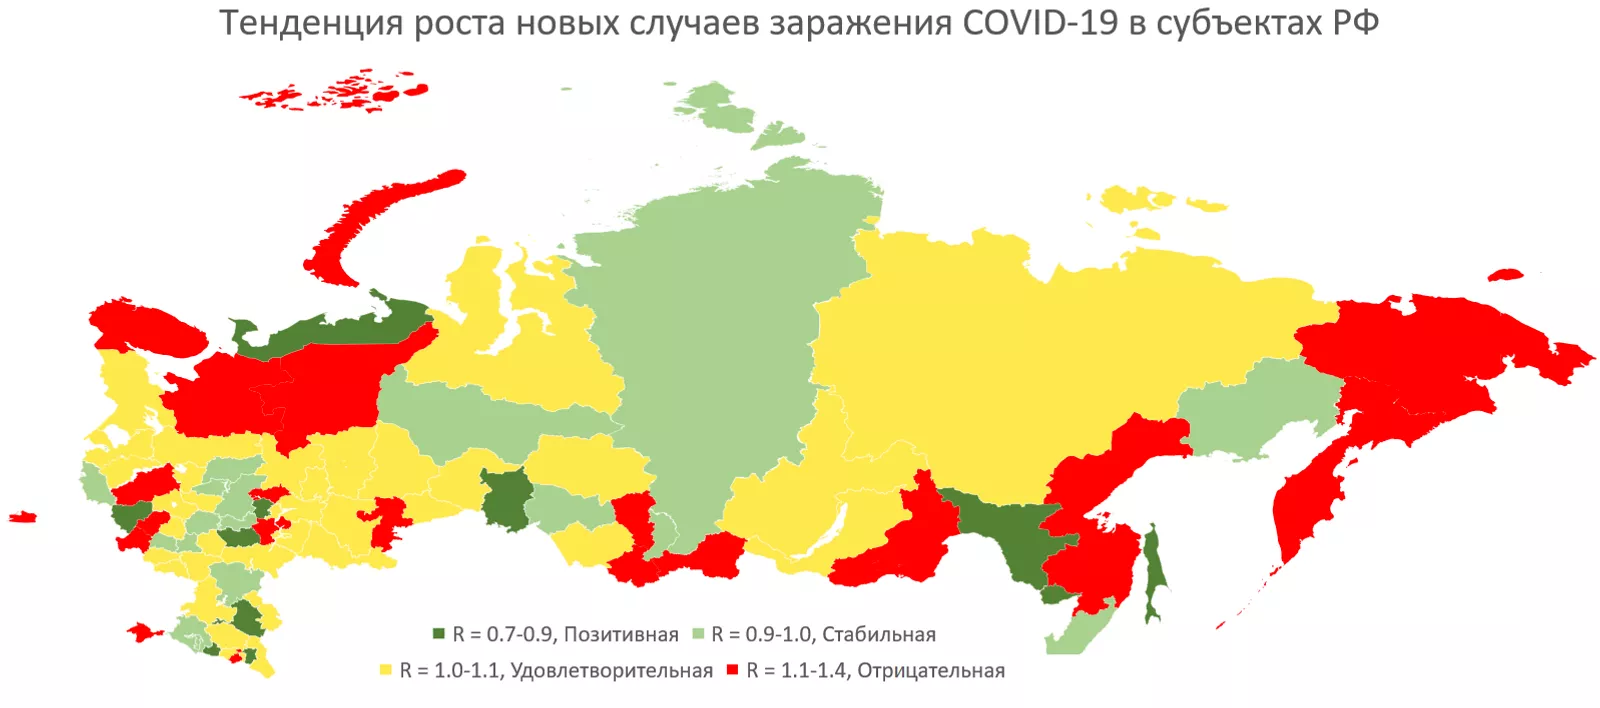 Эксперт заявил об опасной тенденции с COVID-19 в российских регионах